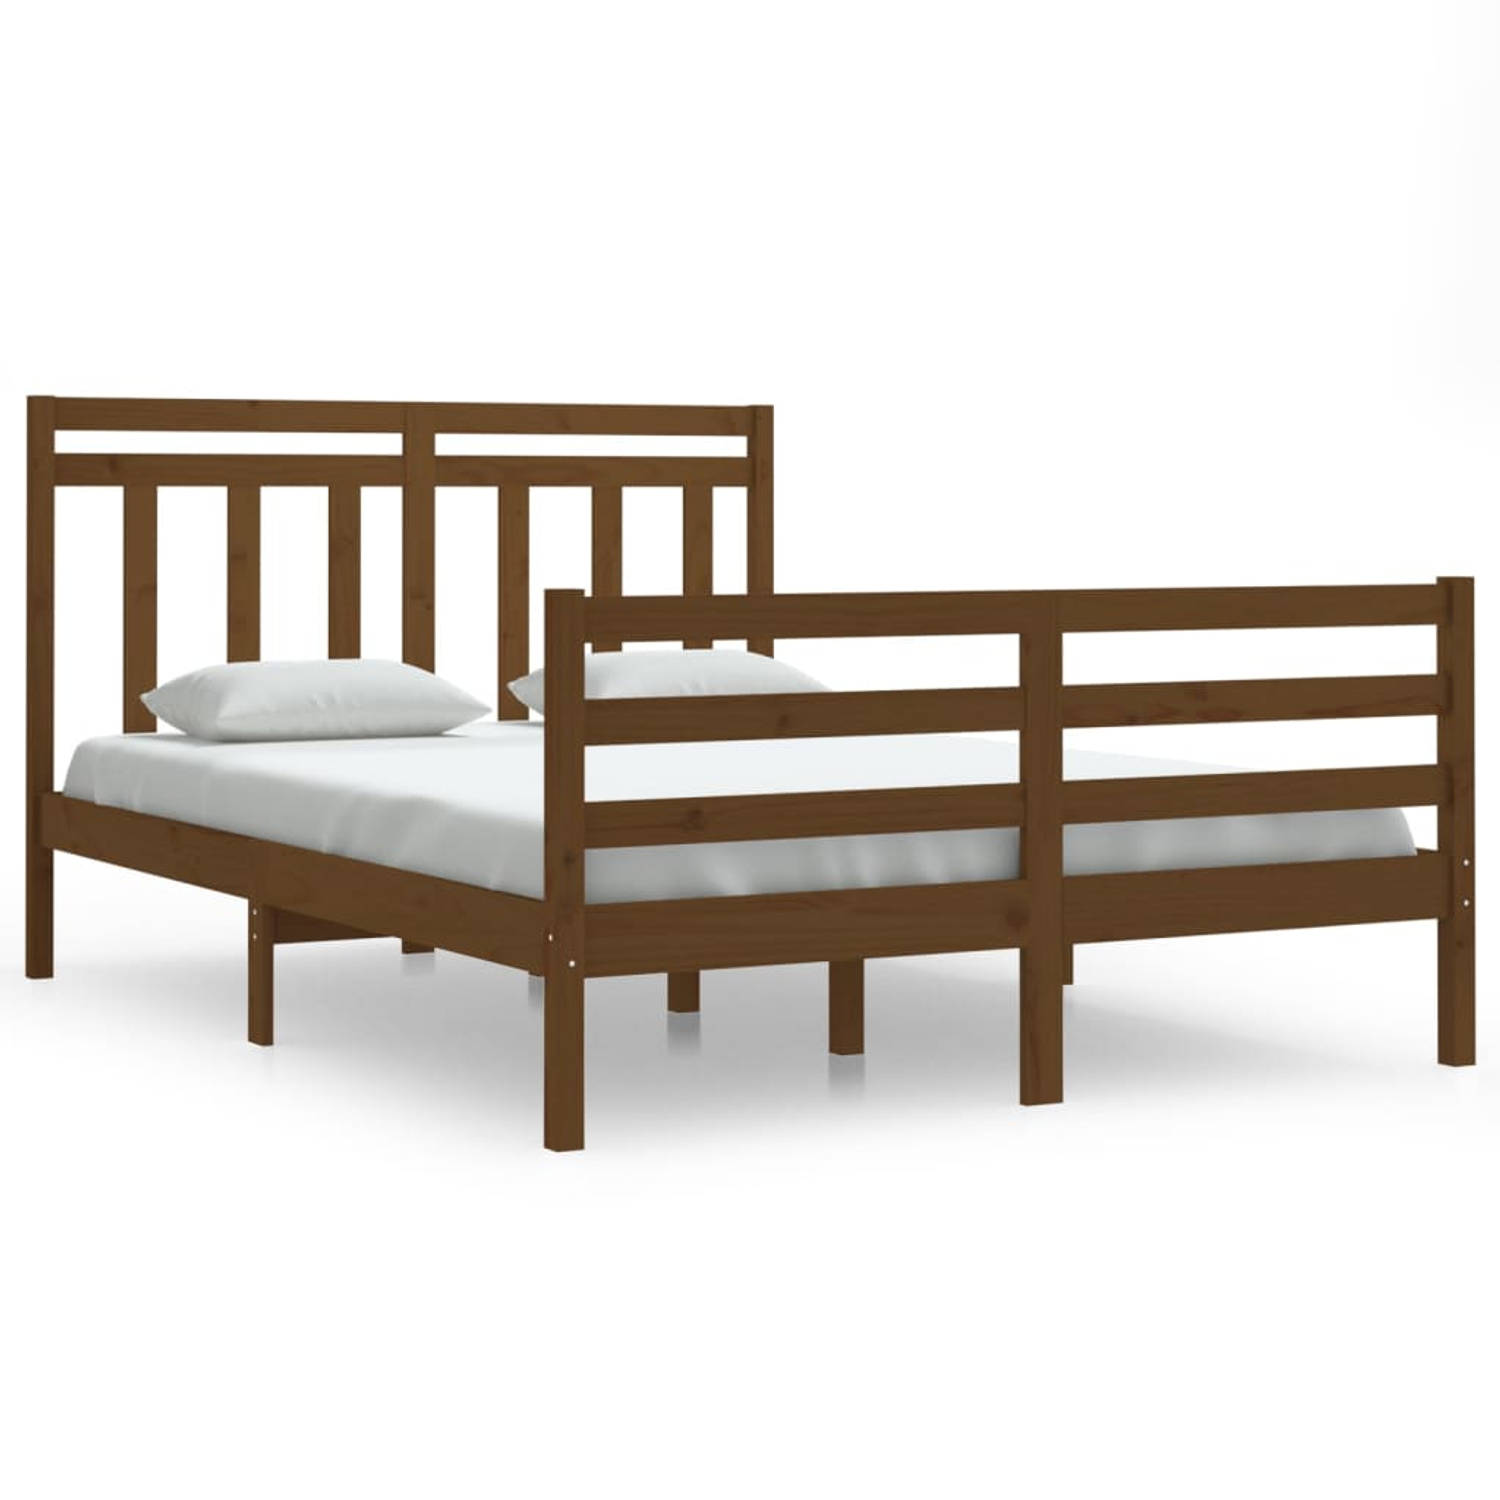 The Living Store Bedframe massief hout honingbruin 140x200 cm - Bedframe - Bedframes - Tweepersoonsbed - Bed - Bedombouw - Dubbel Bed - Frame - Bed Frame - Ledikant - Houten Bedfra